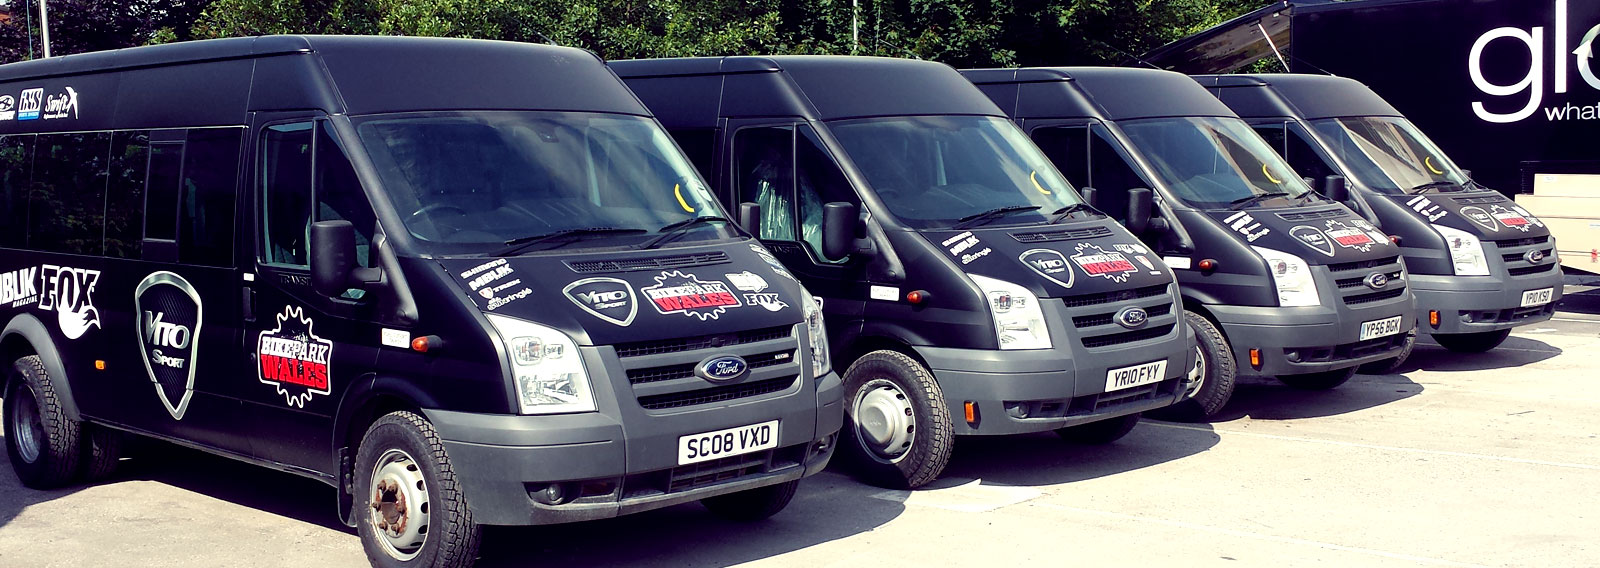 fleet of black vans with custom graphics